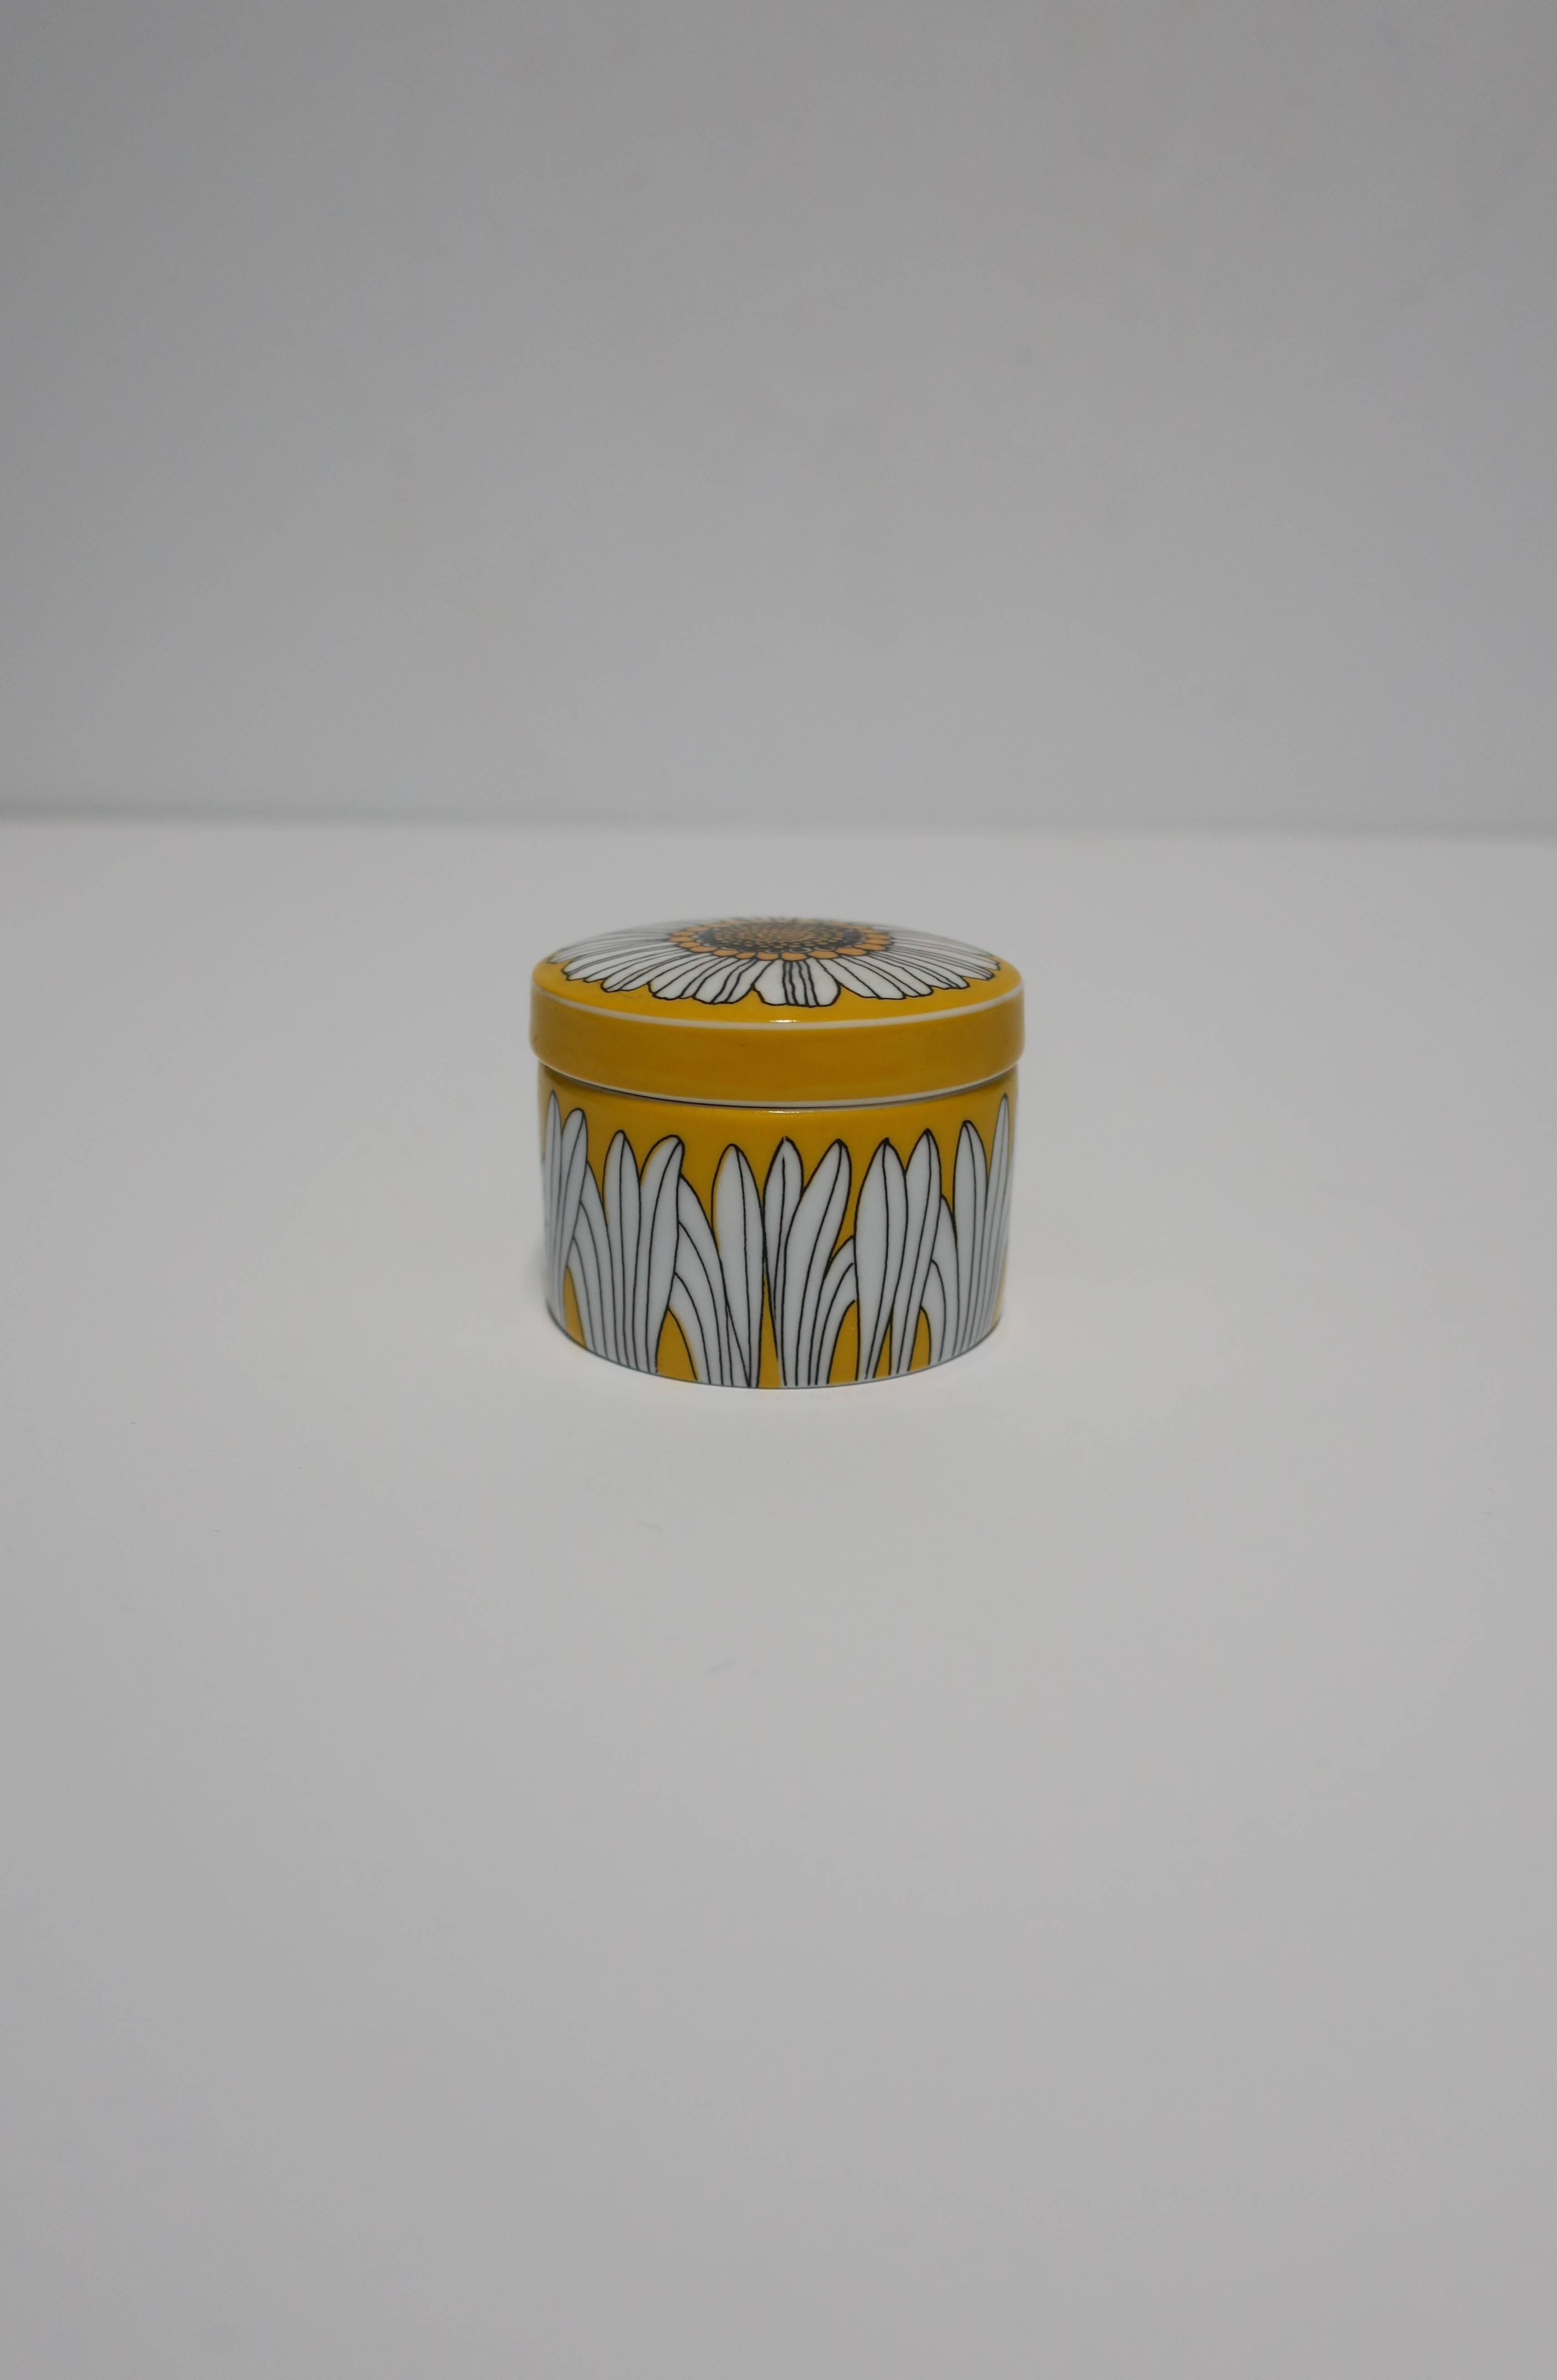 Glazed Mini Round Jewelry Box by Rosenthal Studio-Line, Germany